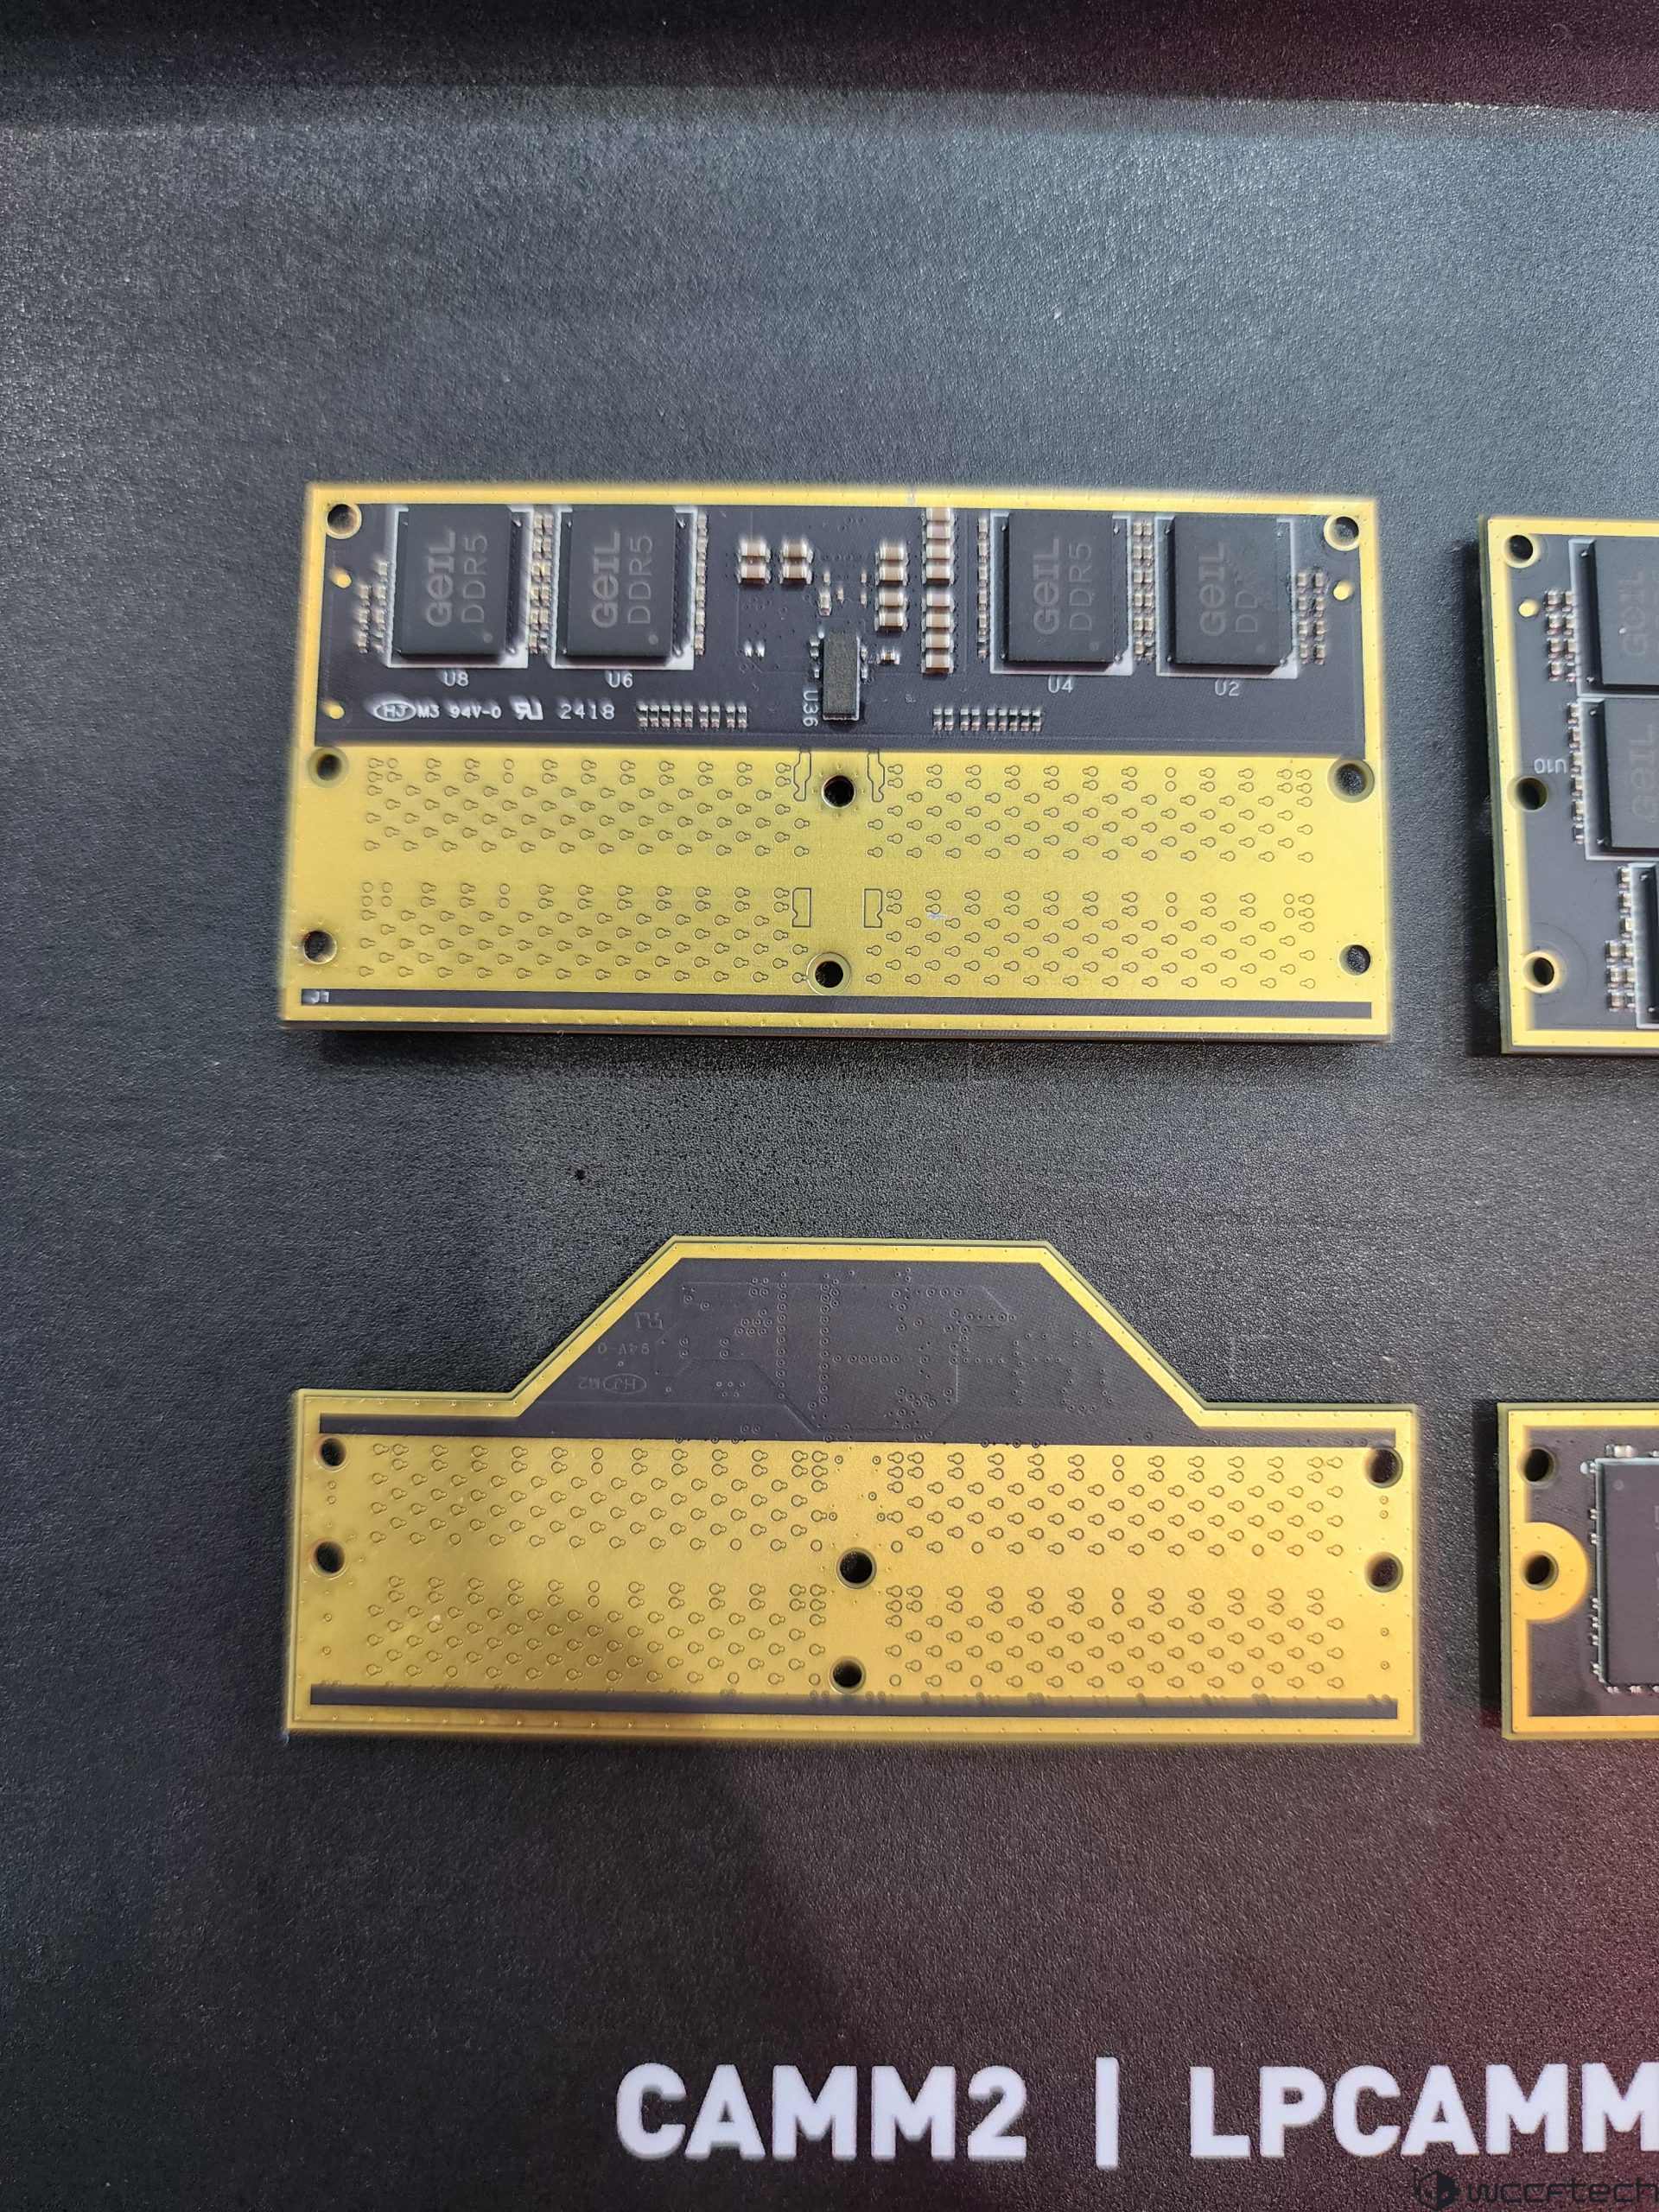 GEIL Yeni DDR5 Bellek Çözümlerini Tanıtıyor: 8600 MT/s'ye Kadar, CAMM2 ve LPCAM2, CUDIMM ve CSODIMM 2